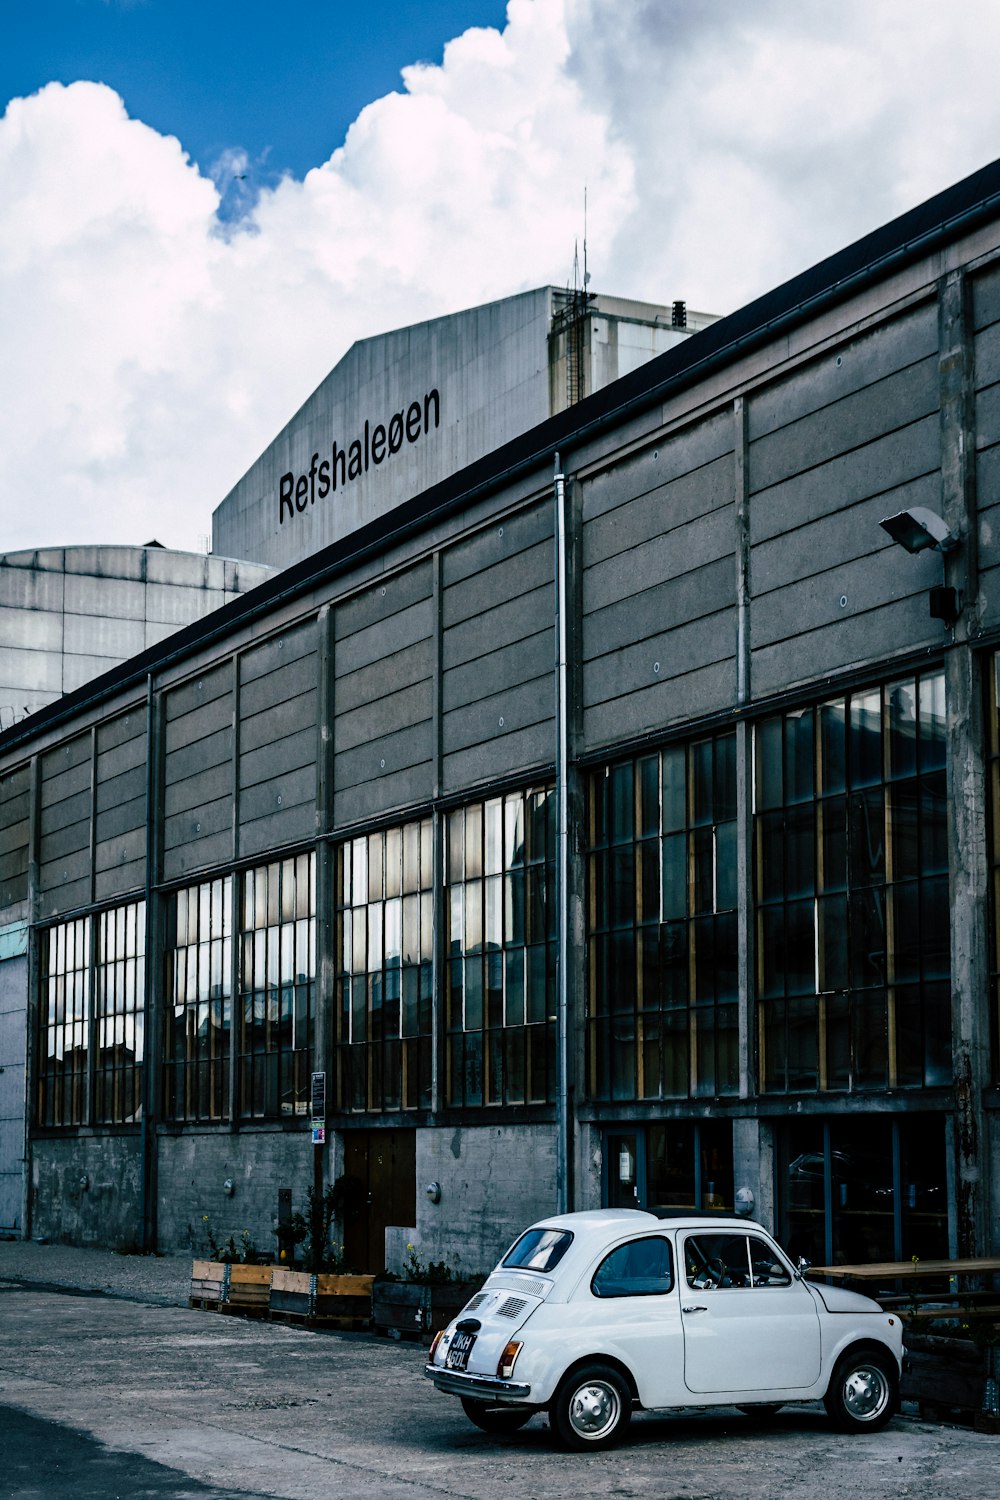 낮 동안 회색 콘크리트 건물 옆에 주차된 흰색 차